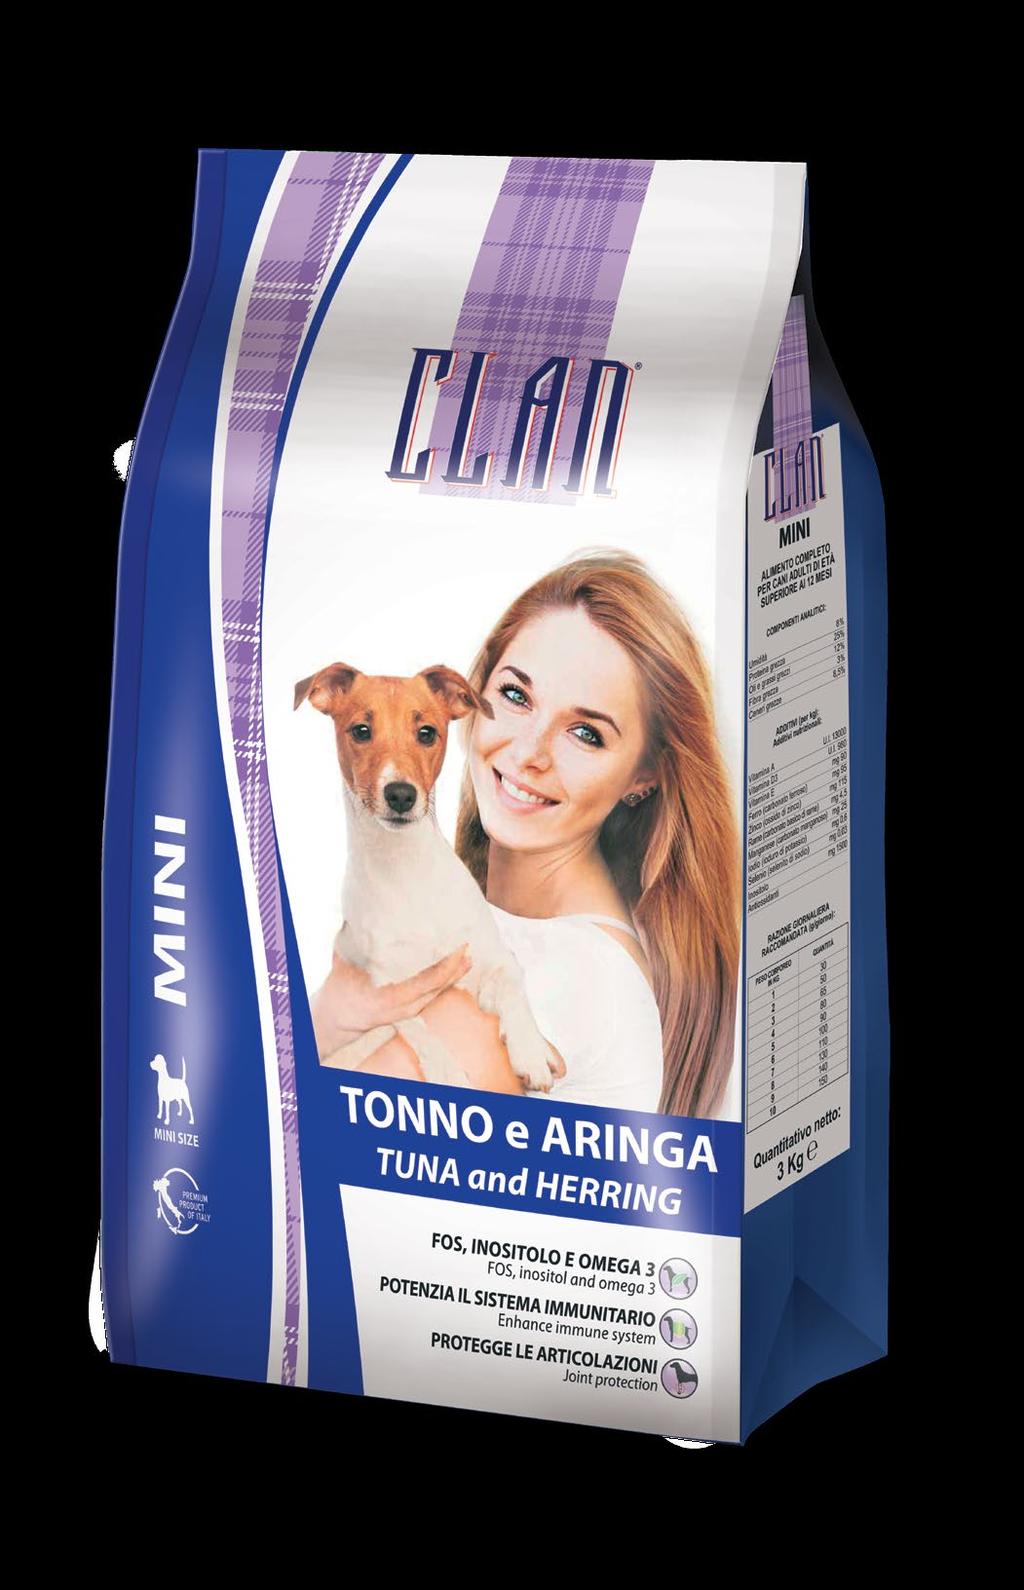 DESCRIZIONE: Clan Mini Tonno e Aringa è un alimento completo per cani adulti di taglia piccola di età superiore a 12 mesi. È fonte di proteine e grassi facilmente digeribili.